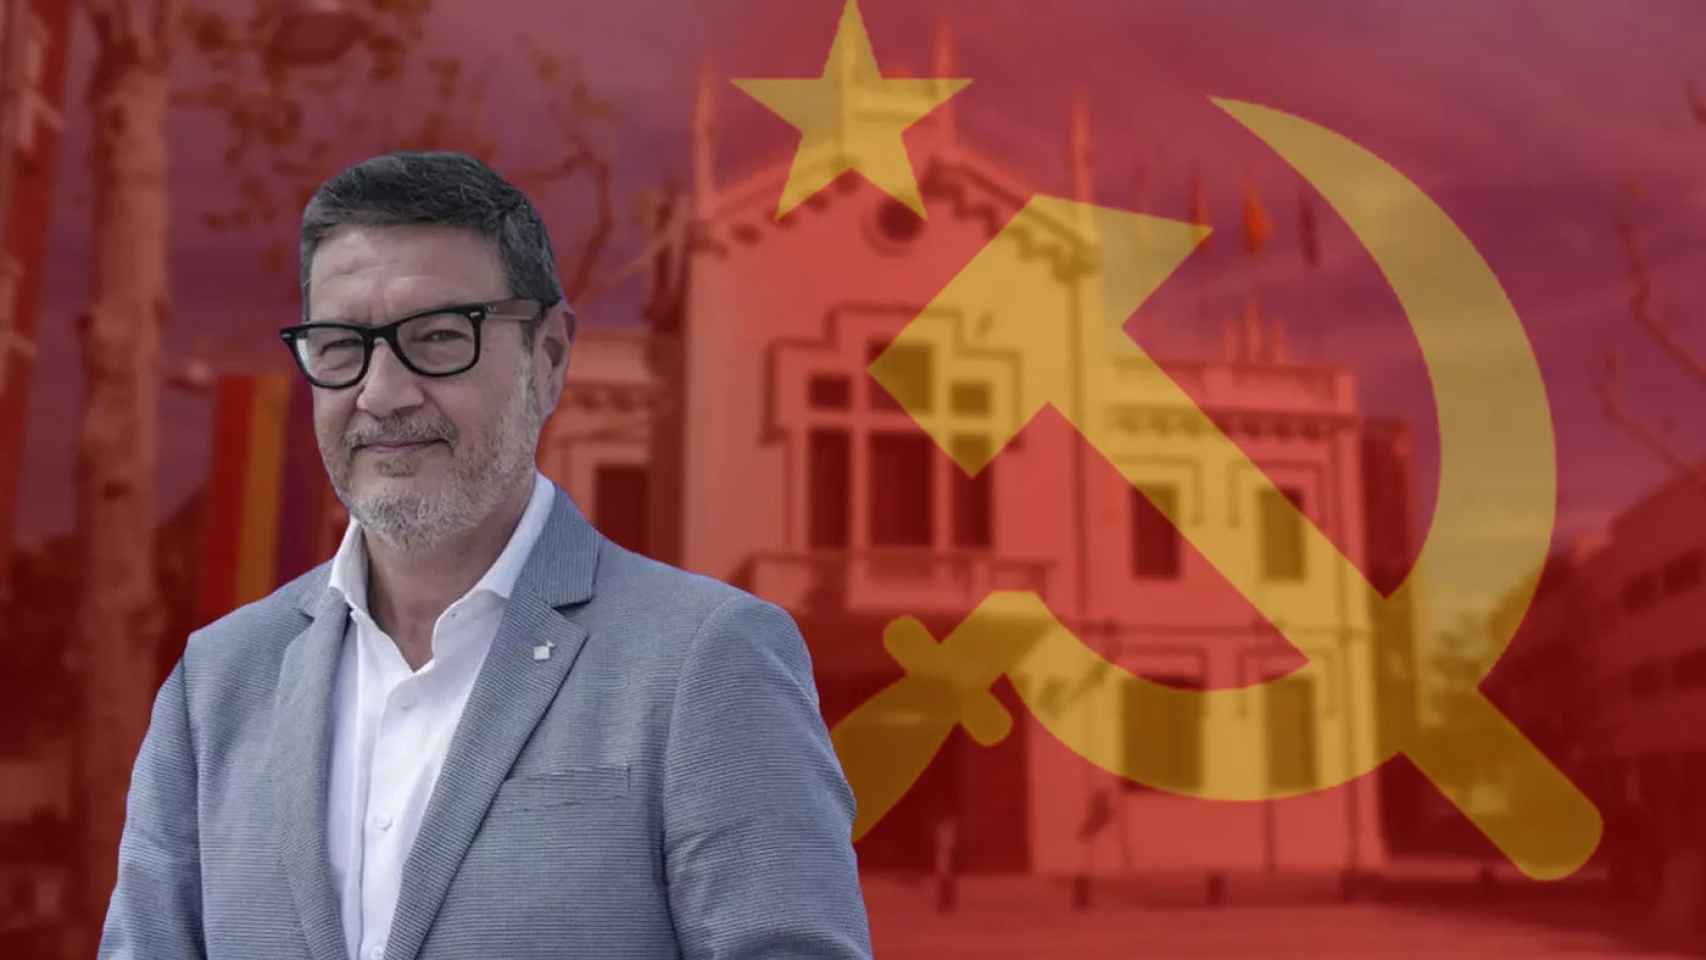 El alcalde en funciones del Prat de Llobregat, Lluis Mijoler, con el símbolo comunista / FOTOMONTAJE (MA)